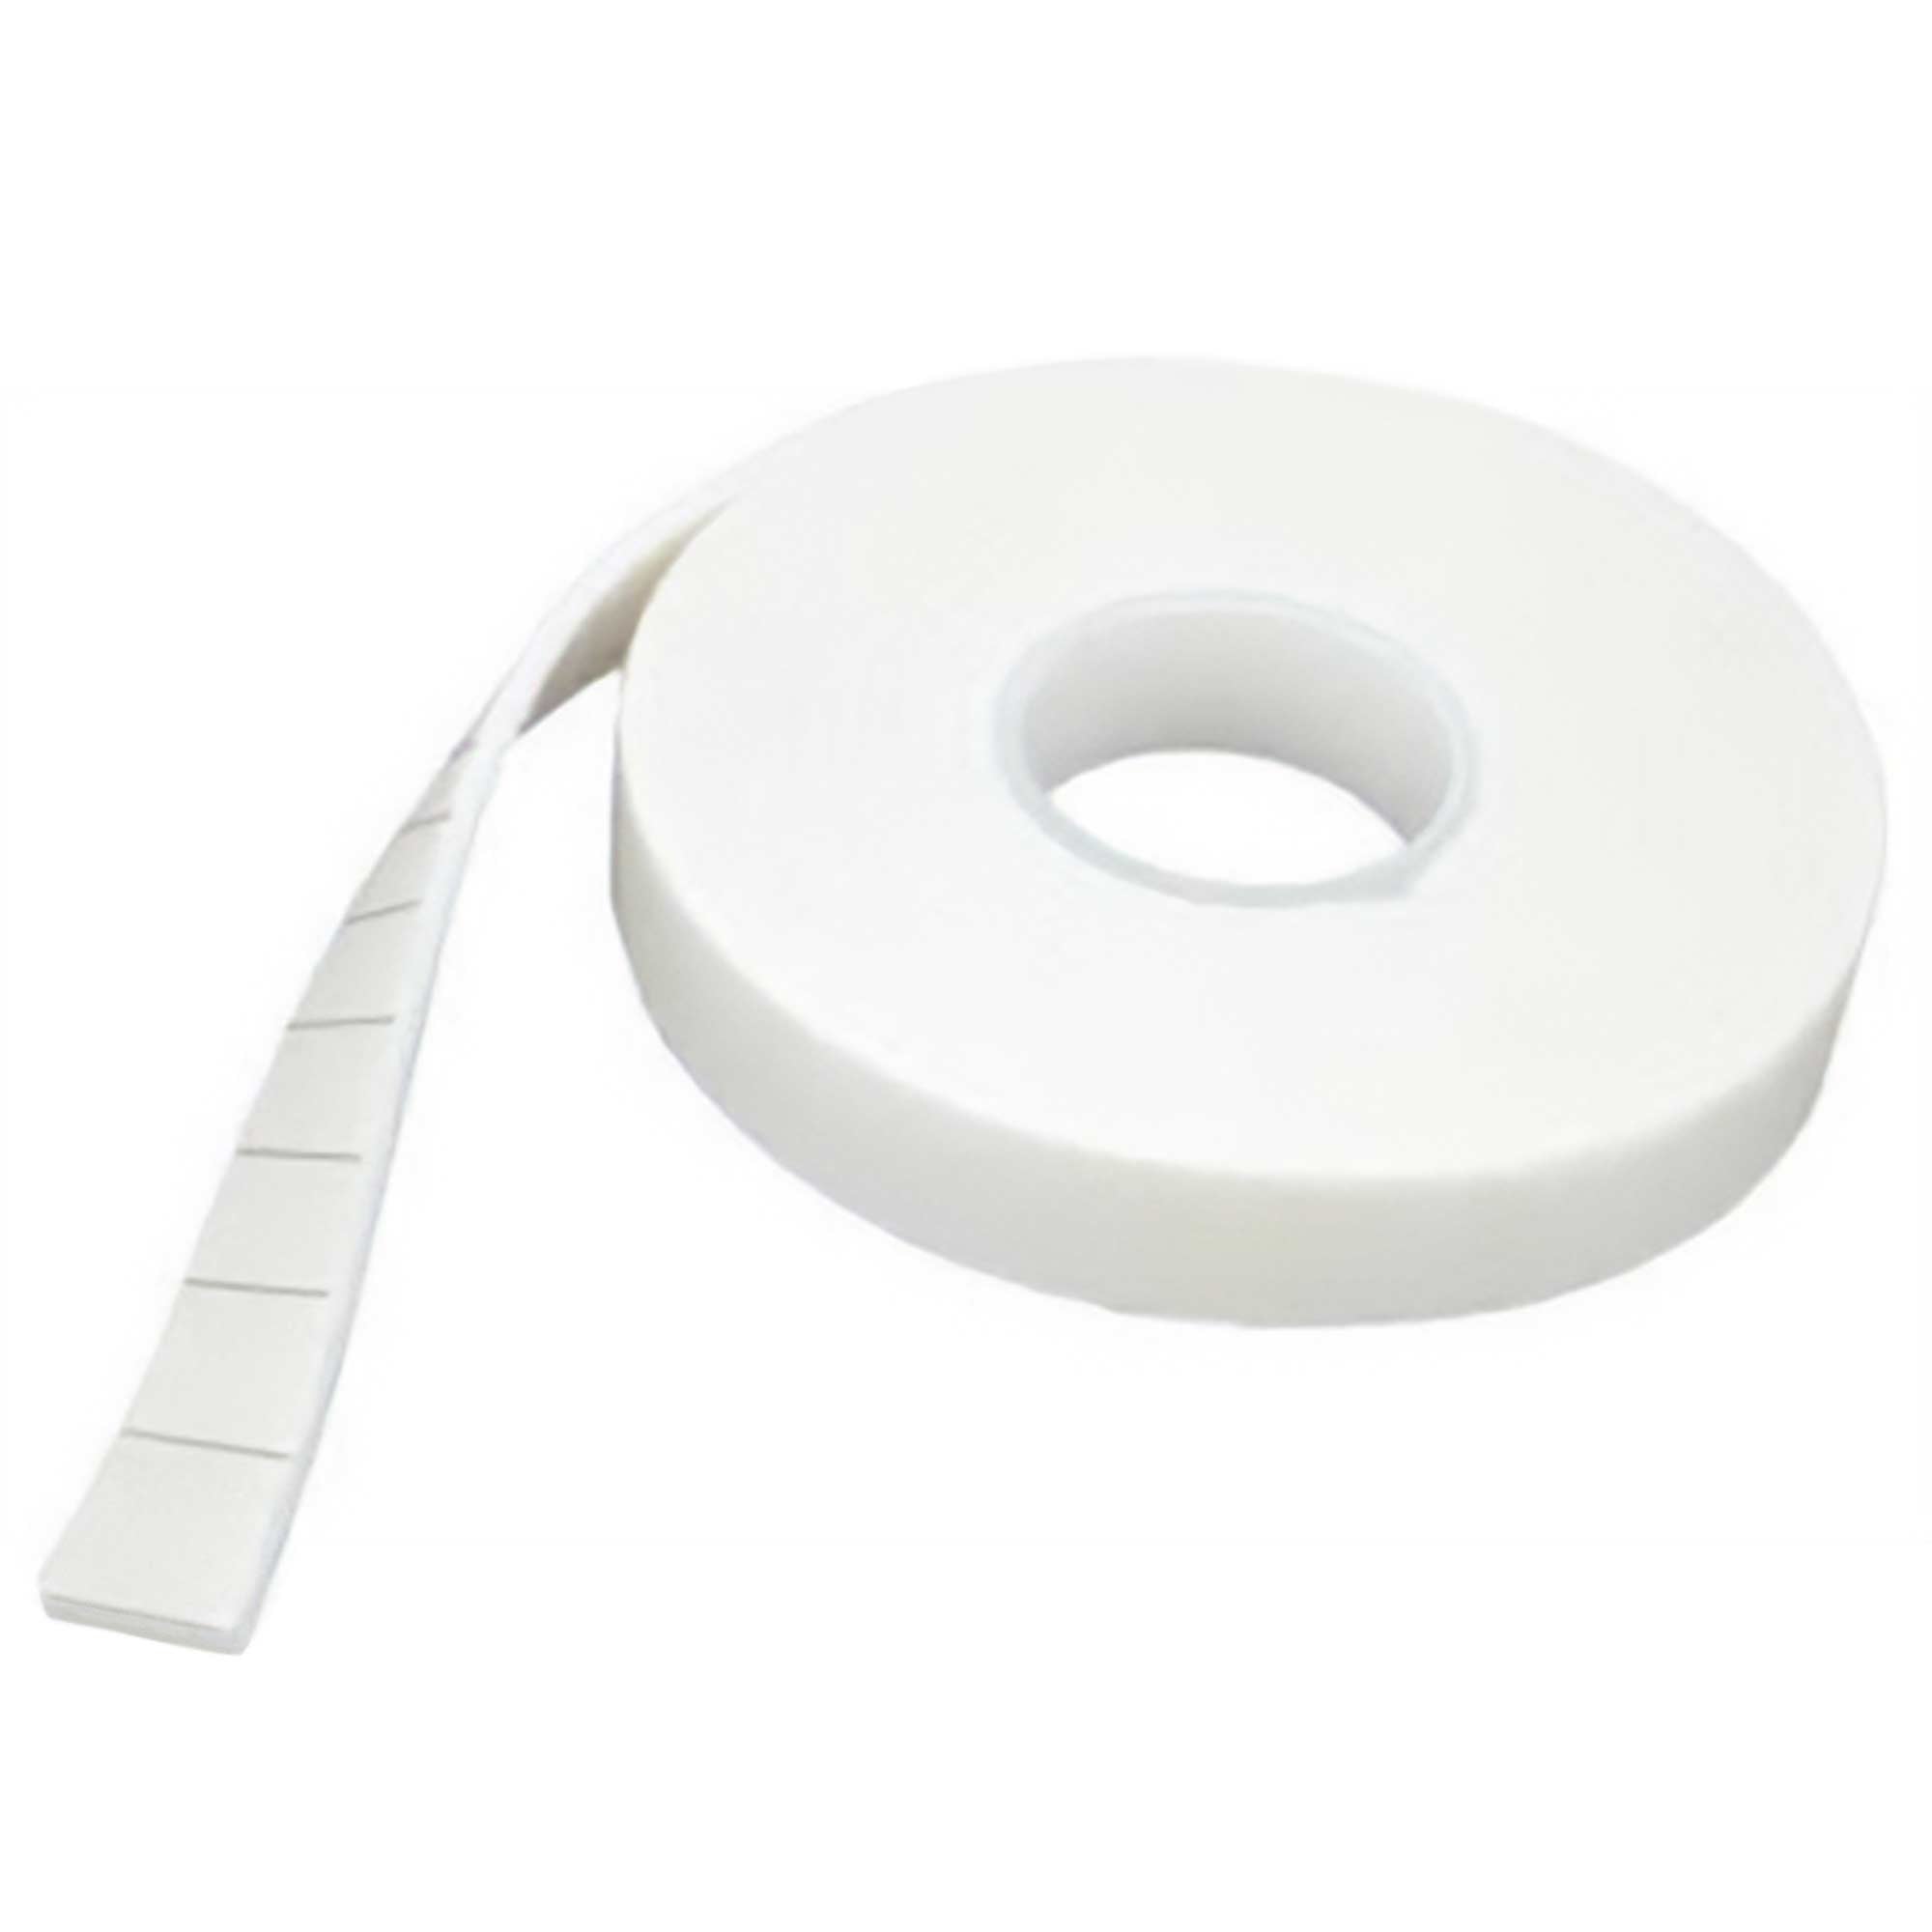 Self-Adhesive Foam Pads - 25mm x 25mm x 1mm - Bulk Roll